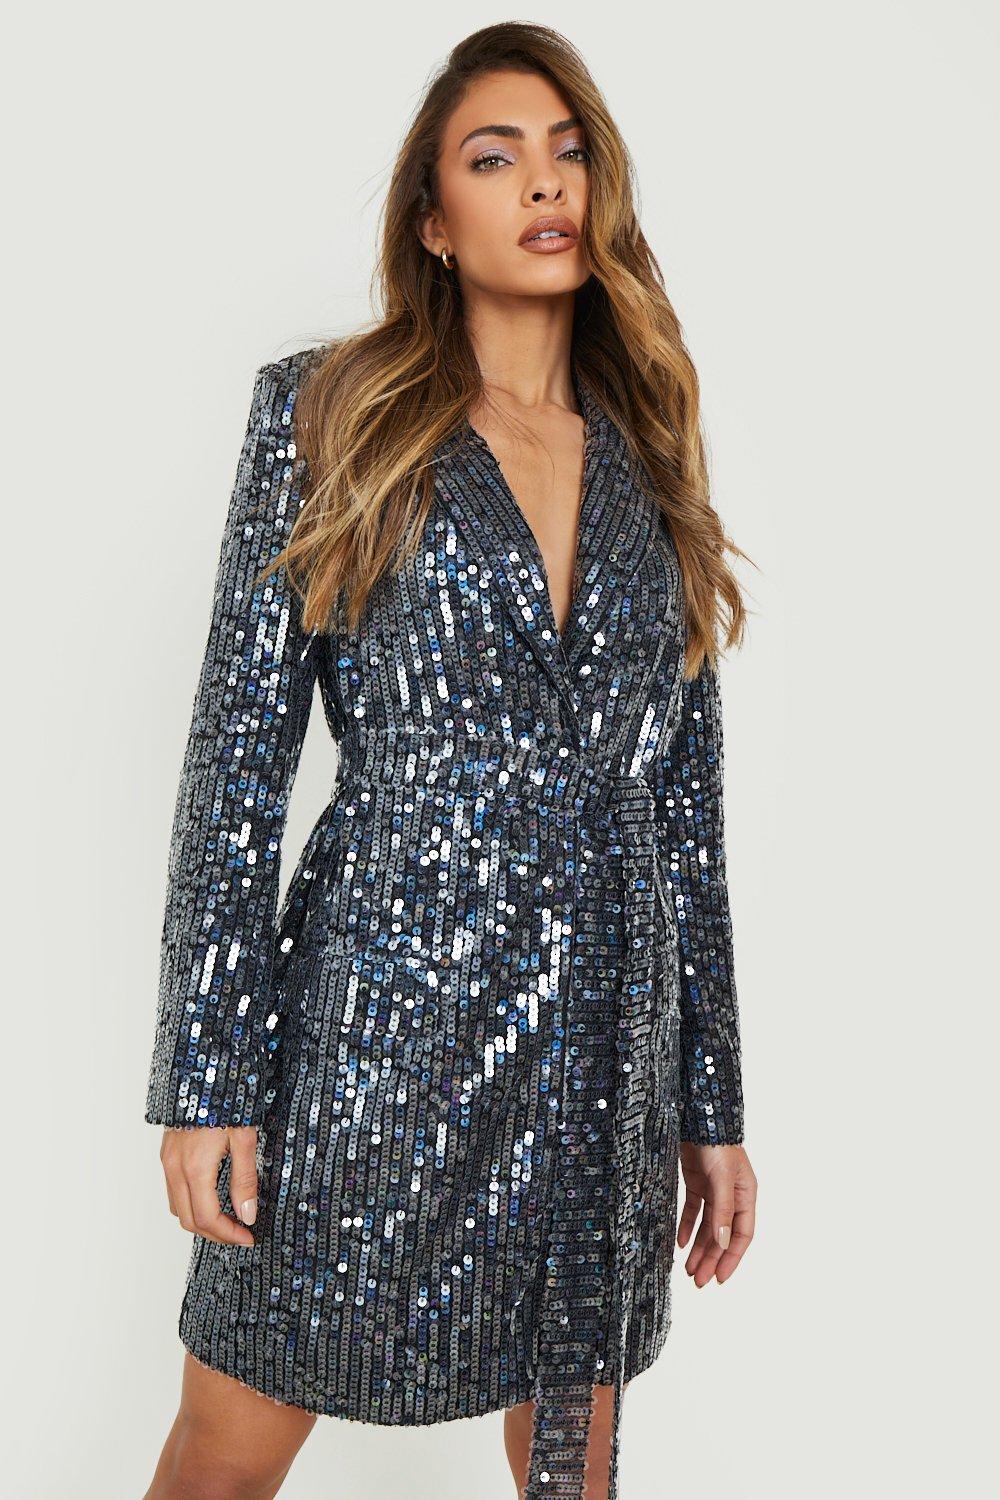 sparkly blazer dress